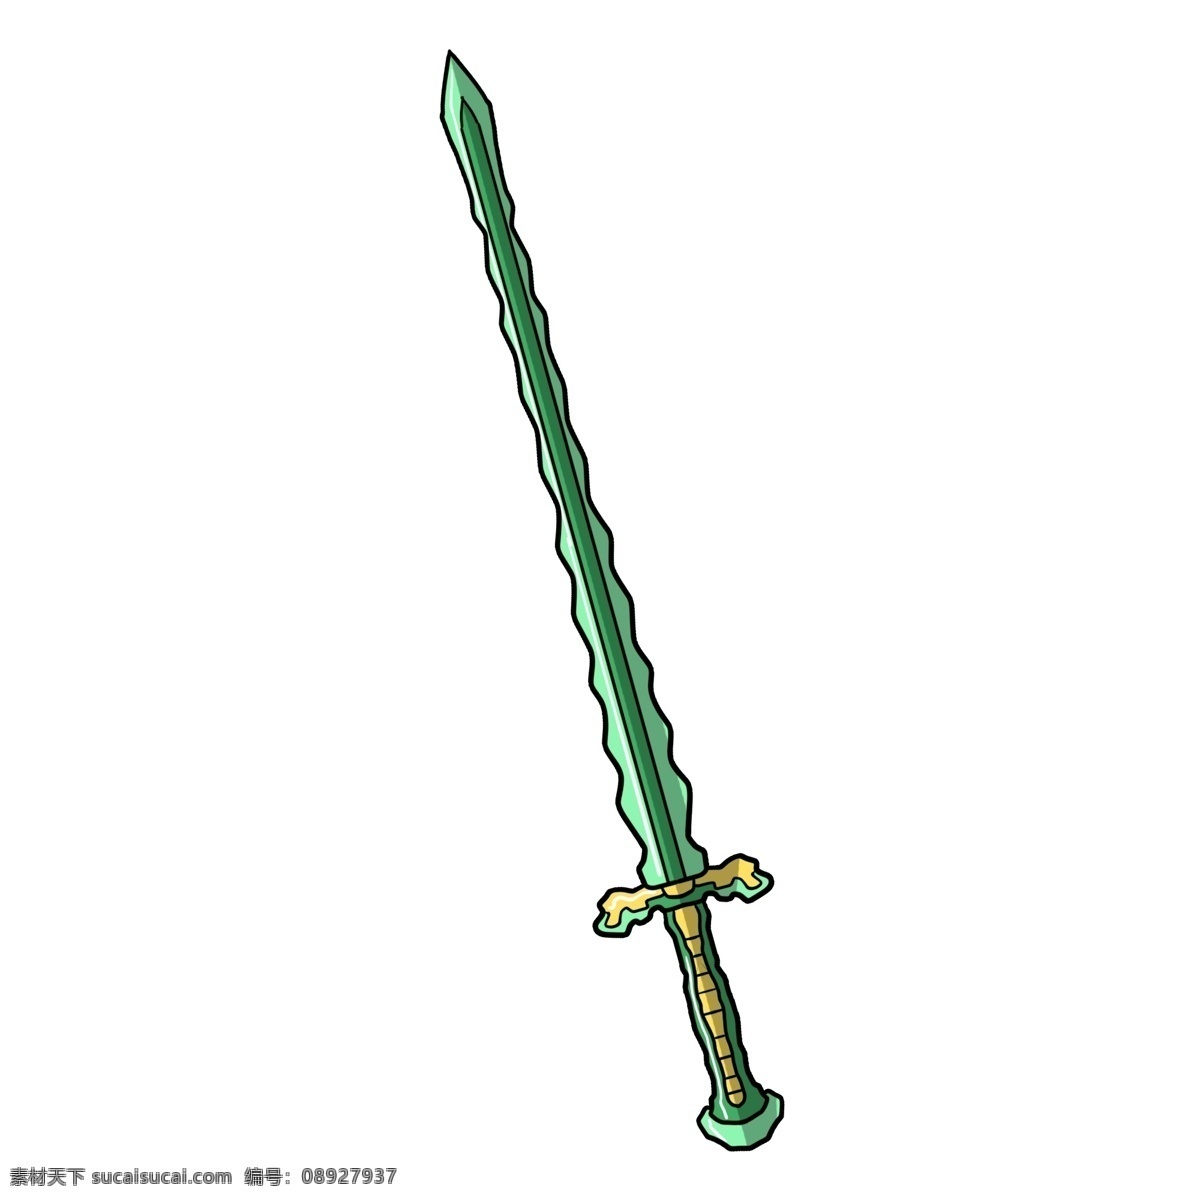 手绘 绿色 宝剑 插画 卡通刀剑 武器刀剑 游戏装备 兵刃 古代兵器 绿色长剑 黄色剑柄宝剑 绿色剑鞘宝剑